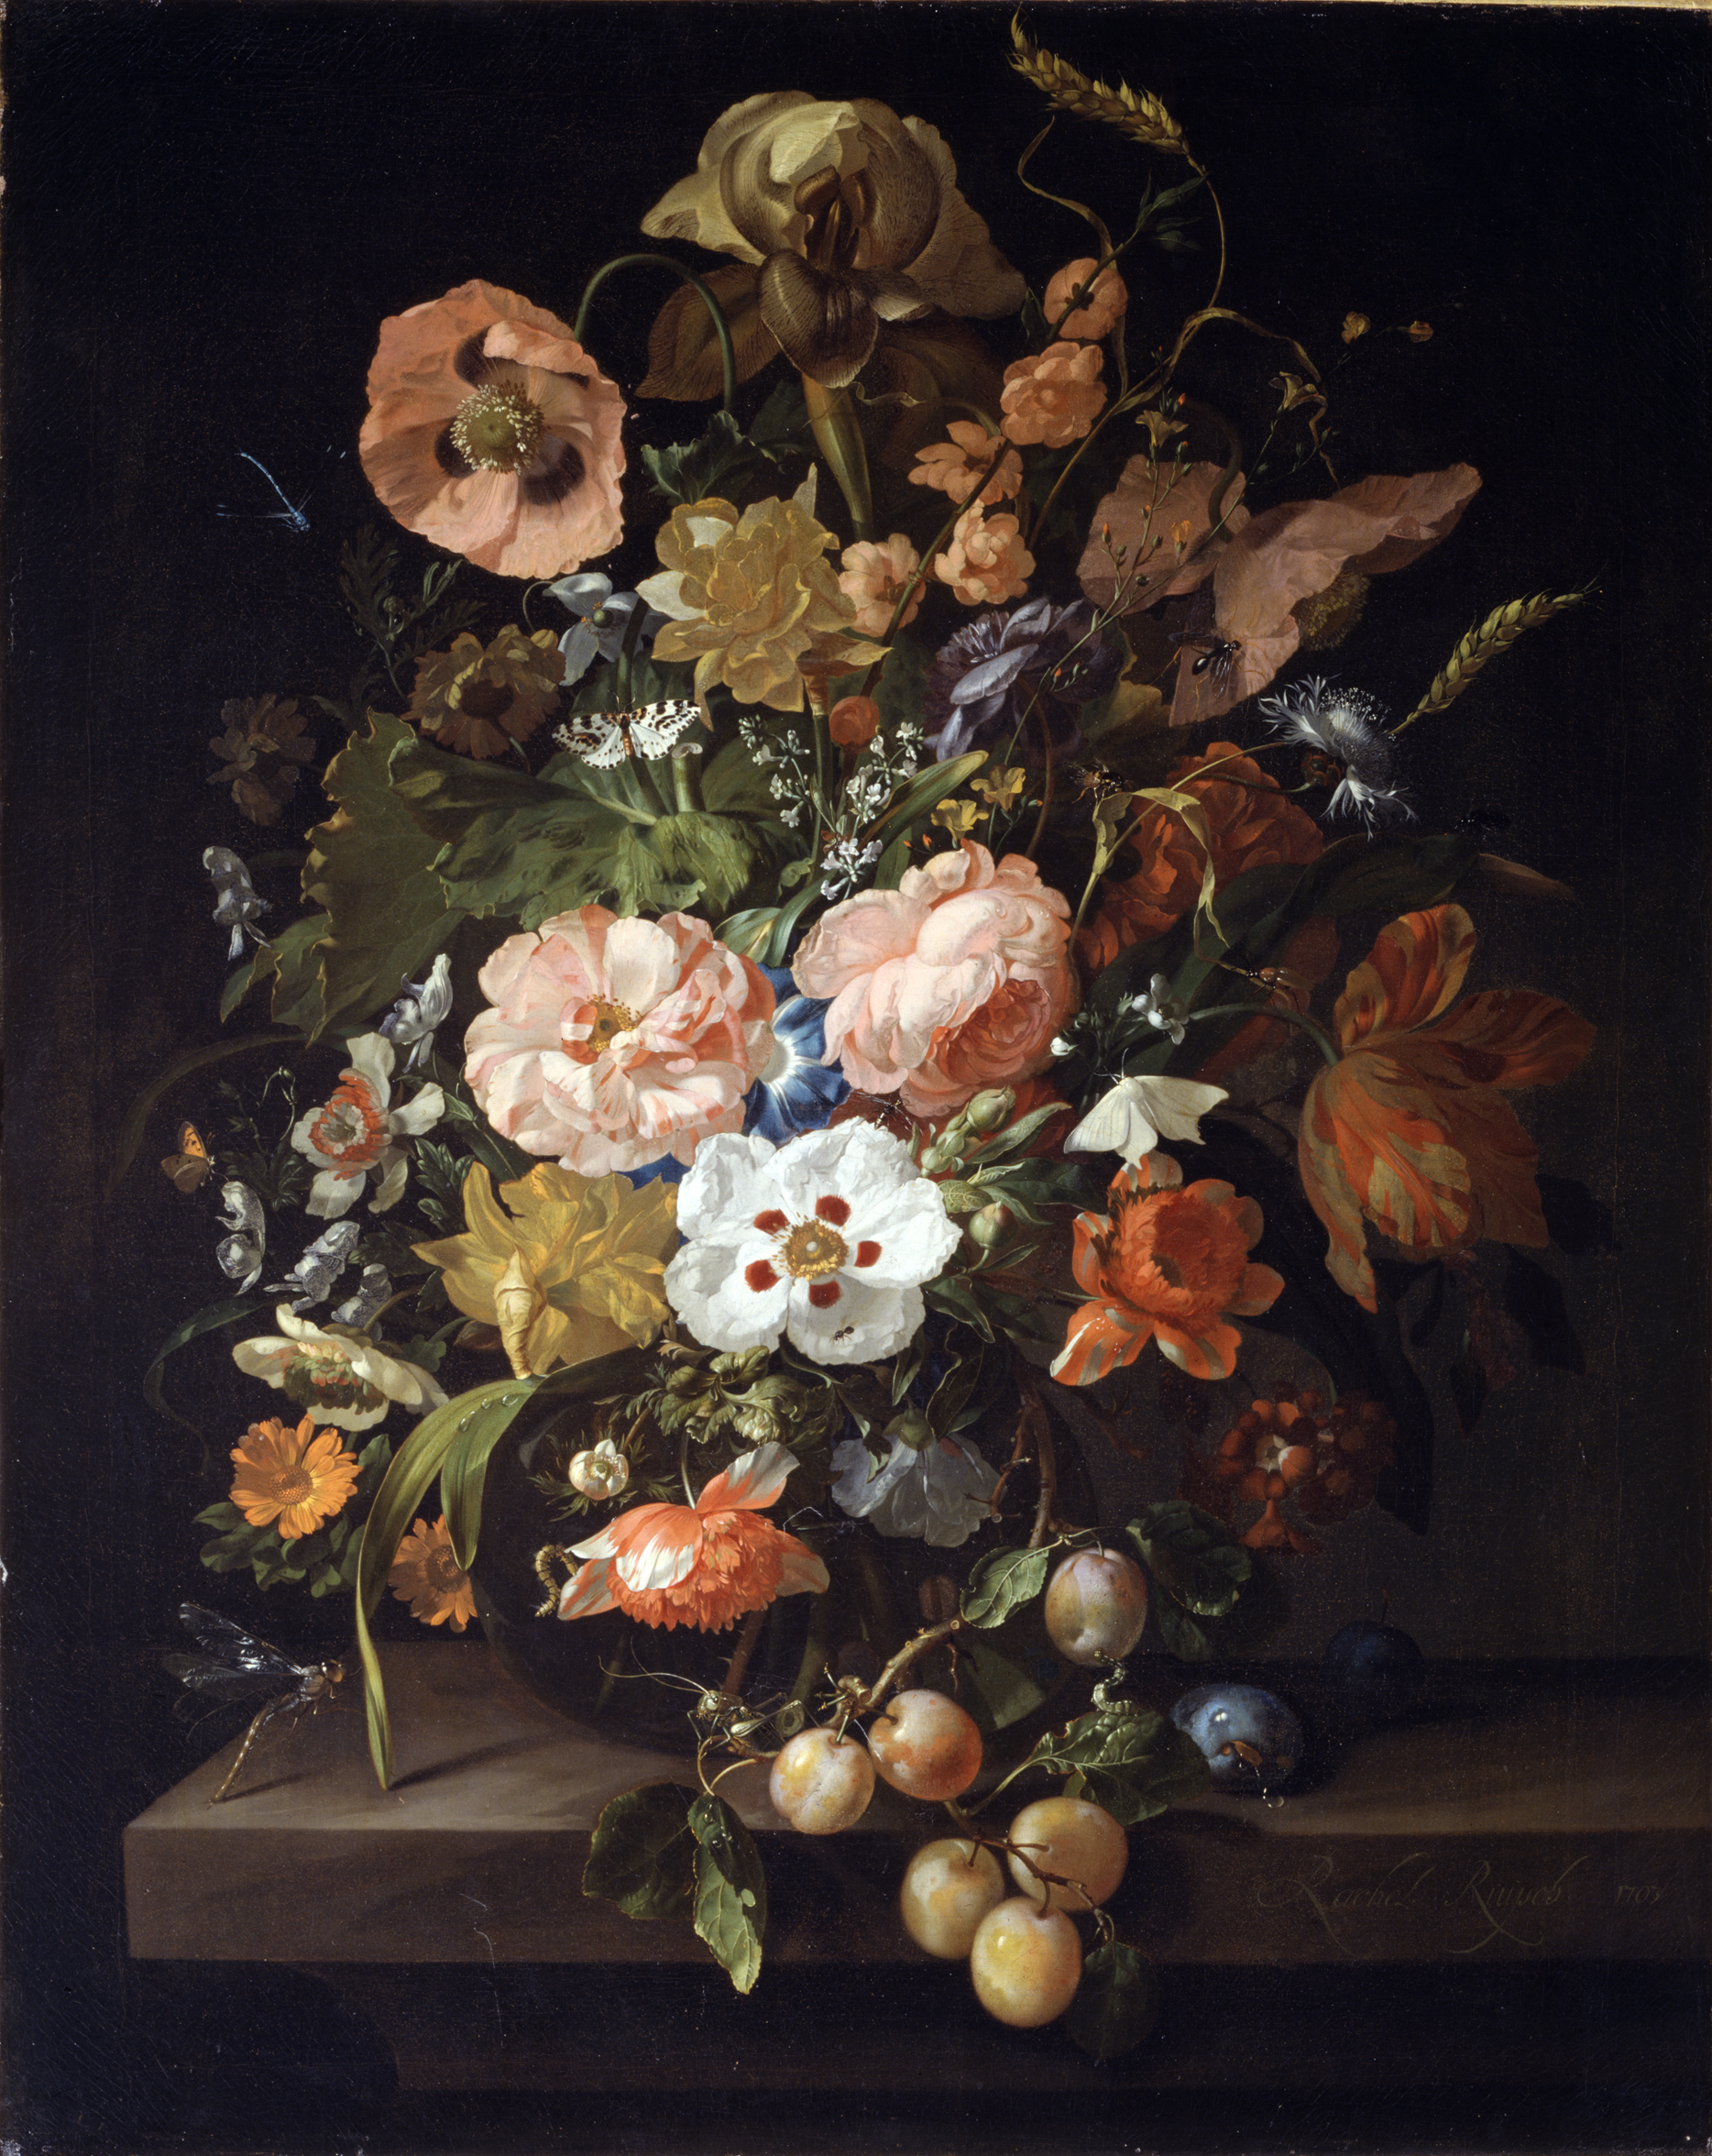 Stilleven met bloemen en fruit by Rachel Ruysch - 1703 Akademie der bildenden Künste, Wien